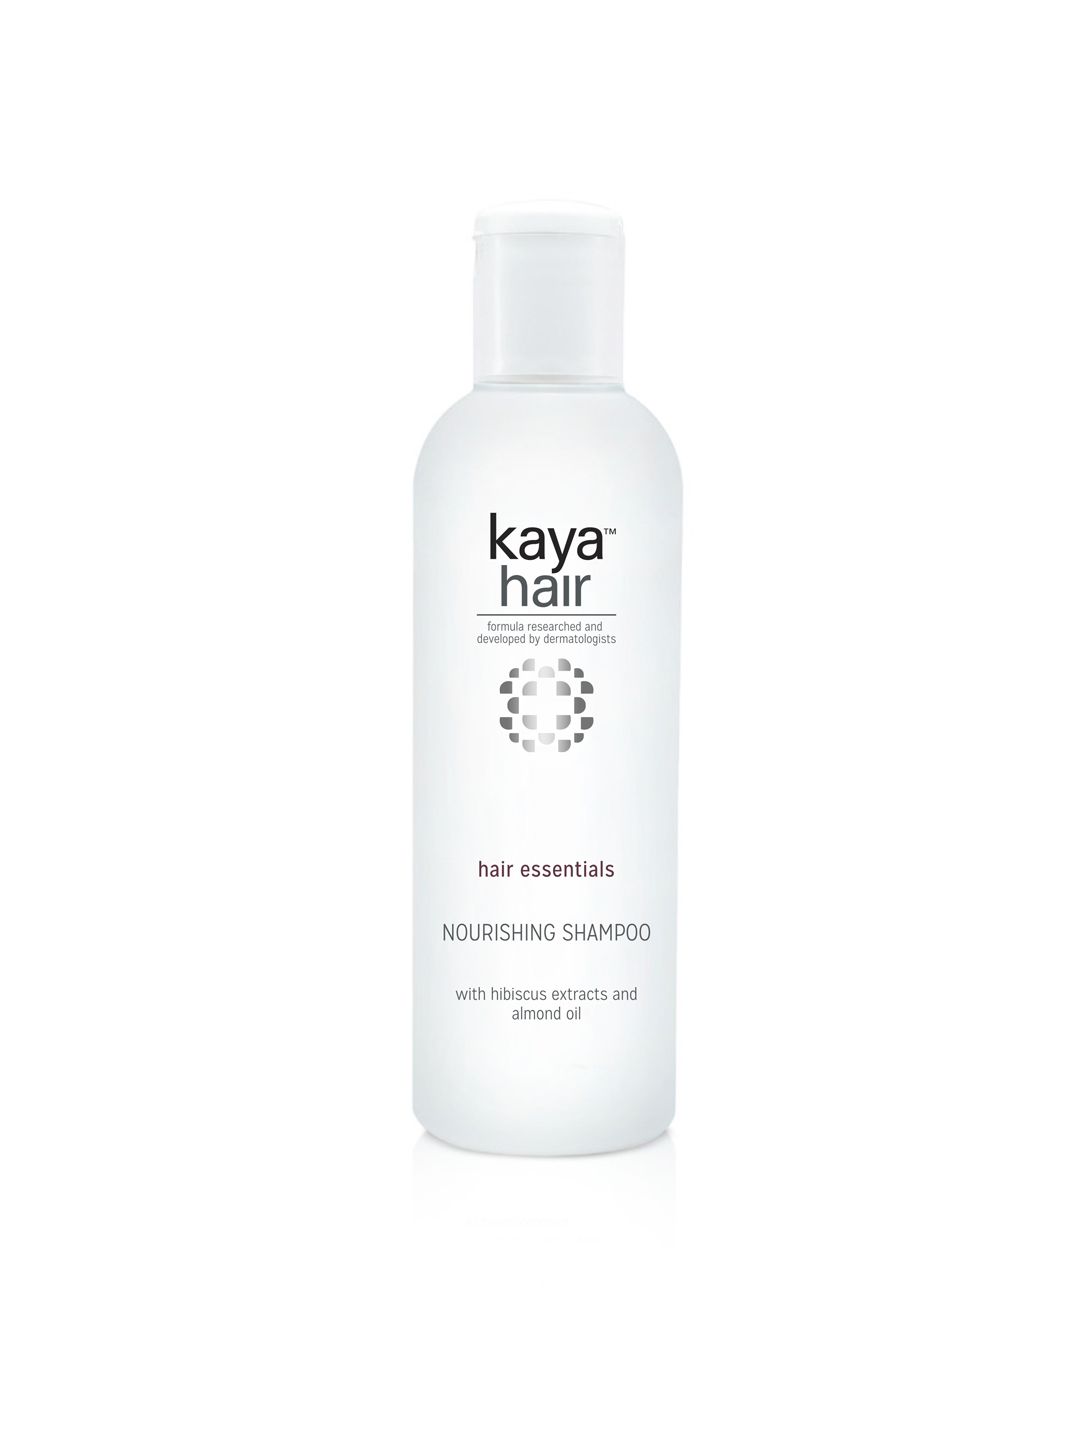 Kaya Nourishing Shampoo - Deep Nourishment 200ml Price in India